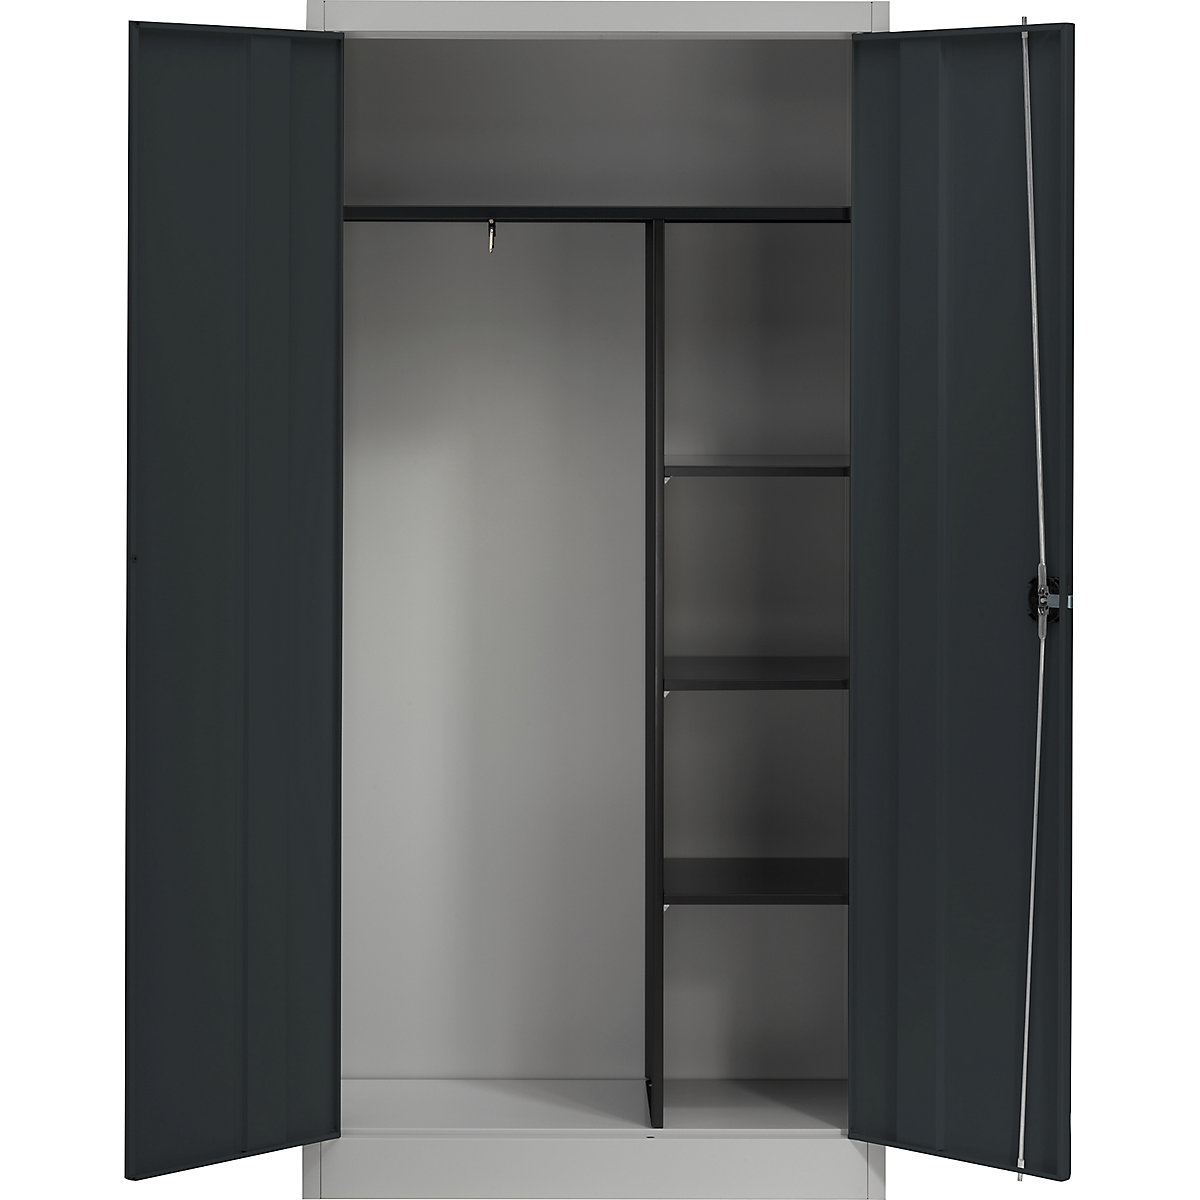 mauser – Oceľová skriňa s krídlovými dverami, 3 krátke police a šatník, strieborná / antracitová šedá